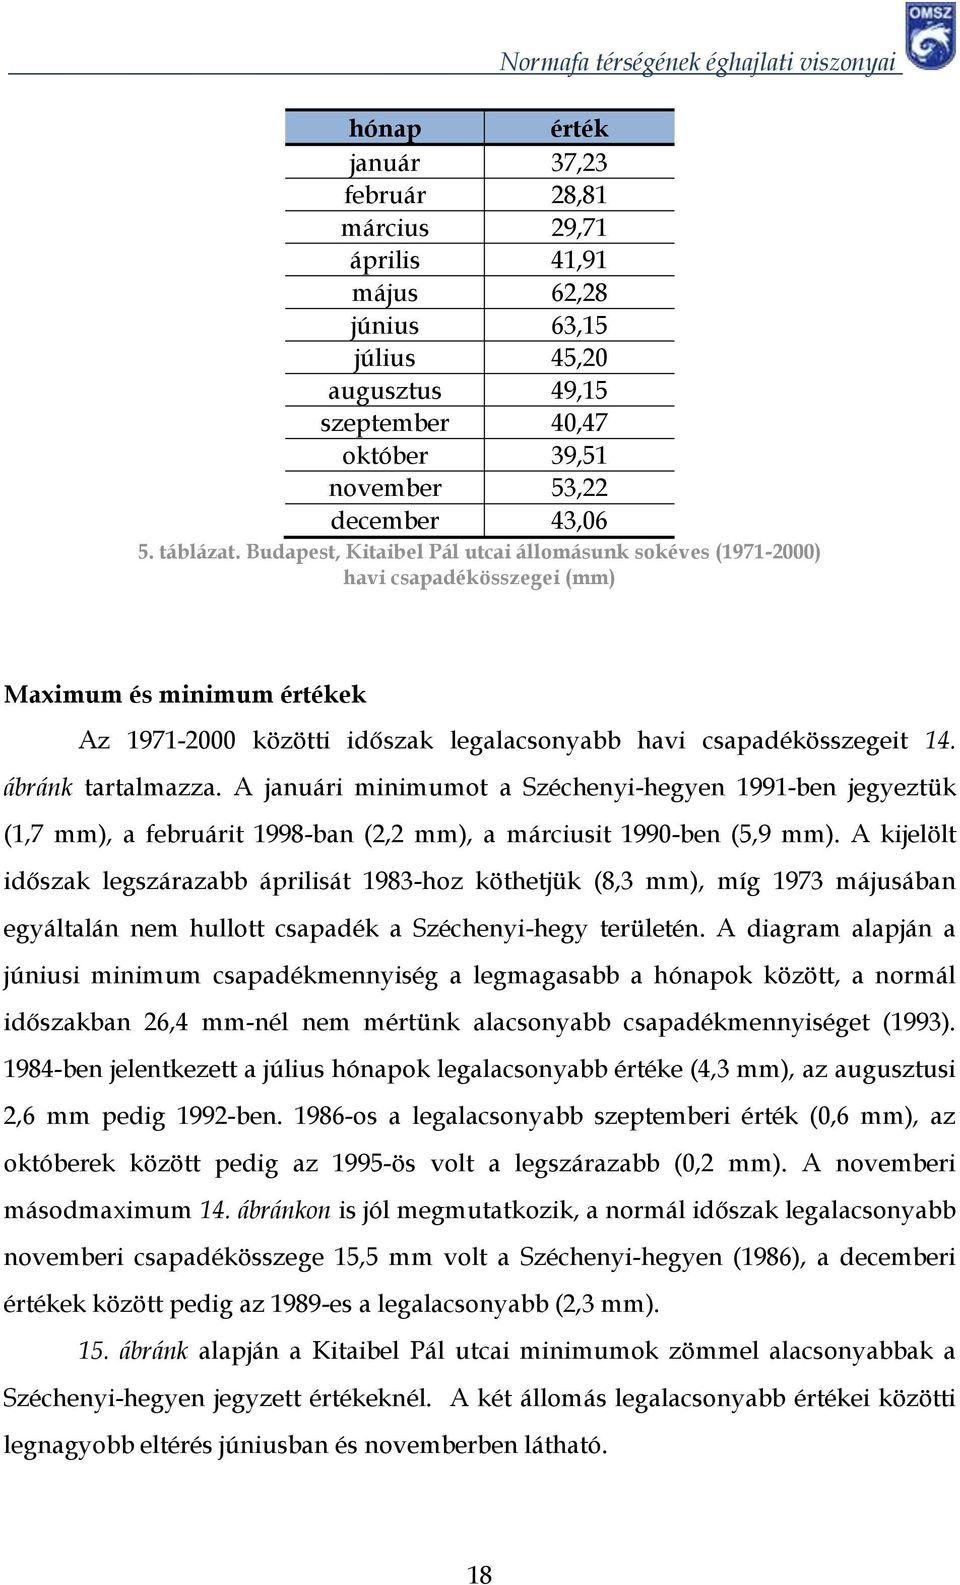 A januári minimumot a Széchenyi-hegyen 1991-ben jegyeztük (1,7 mm), a februárit 1998-ban (2,2 mm), a márciusit 199-ben (5,9 mm).